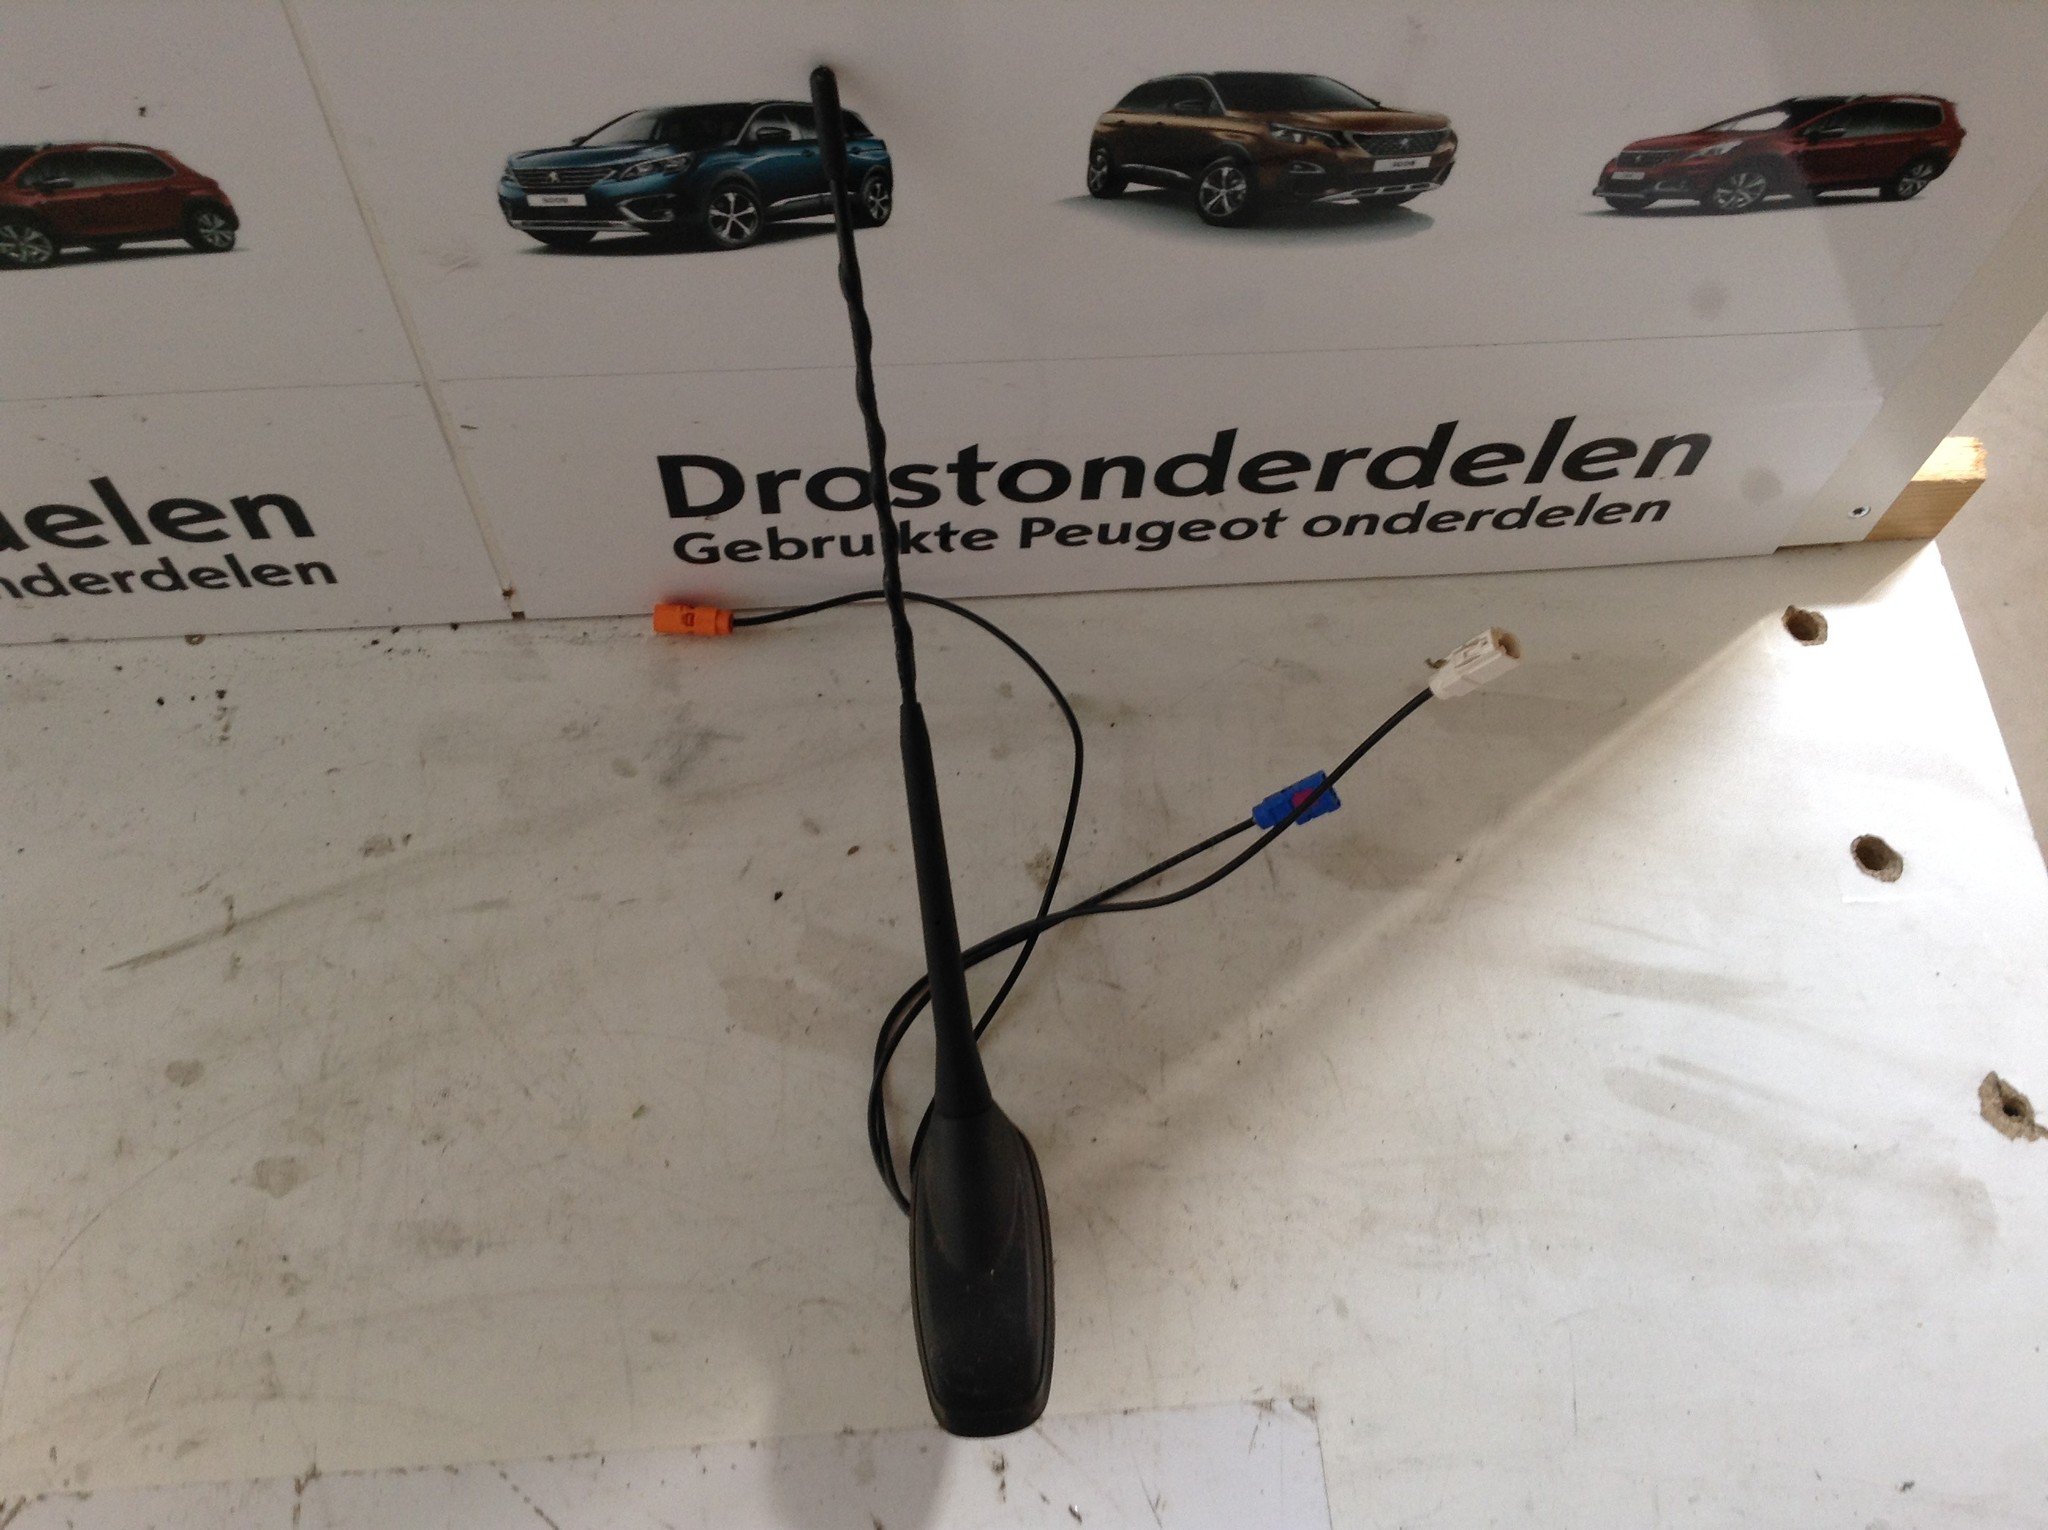 Navigatie Peugeot 308 T9 dab aansluiting | Drostonderdelen